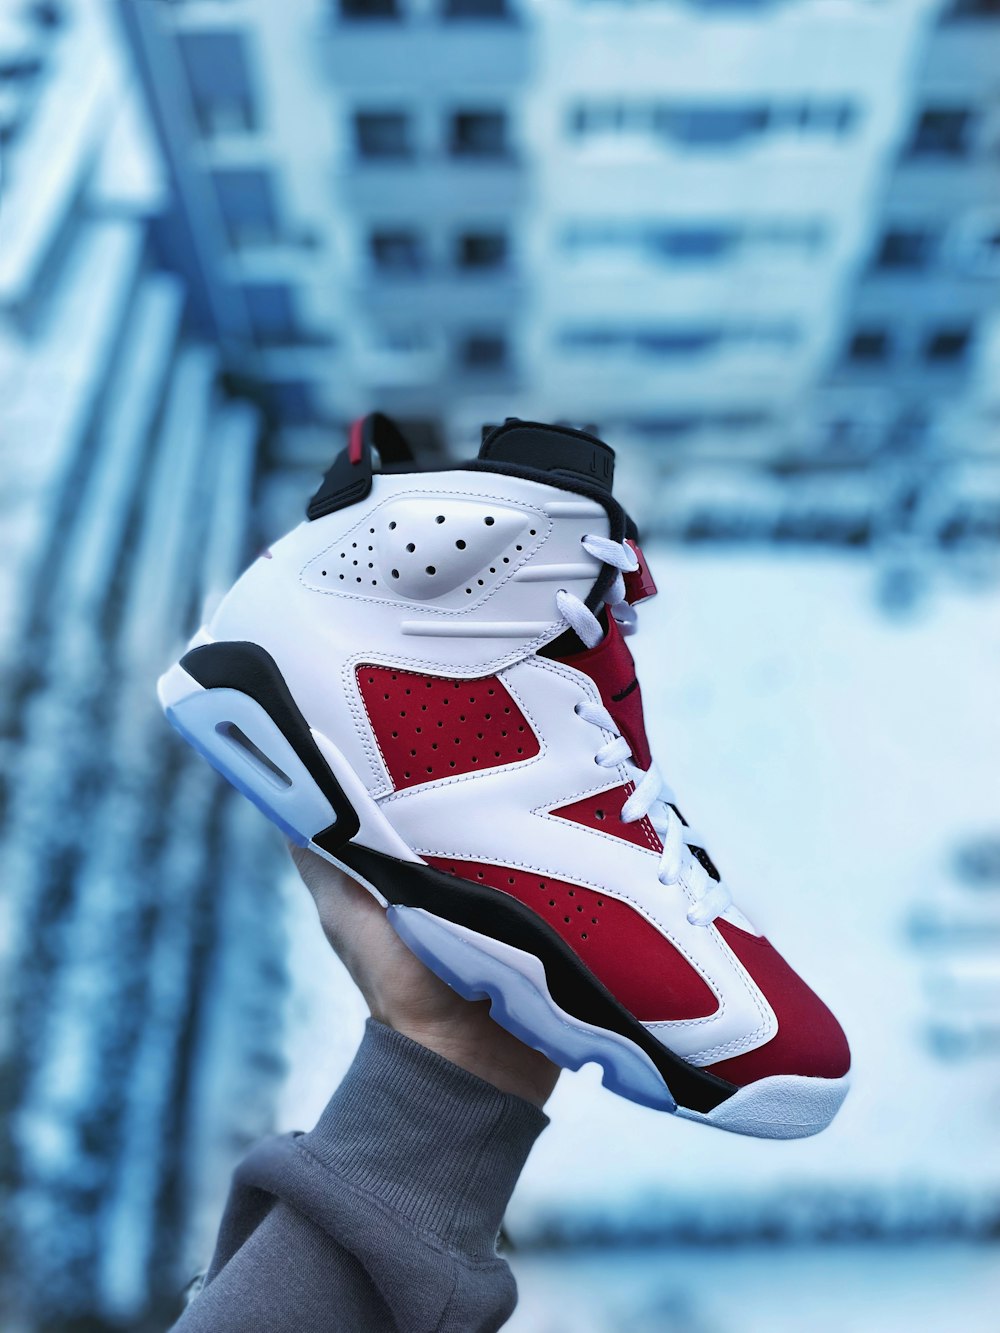 persona che indossa scarpe da basket nike bianche rosse e nere foto –  Abbigliamento sportivo Immagine gratuita su Unsplash